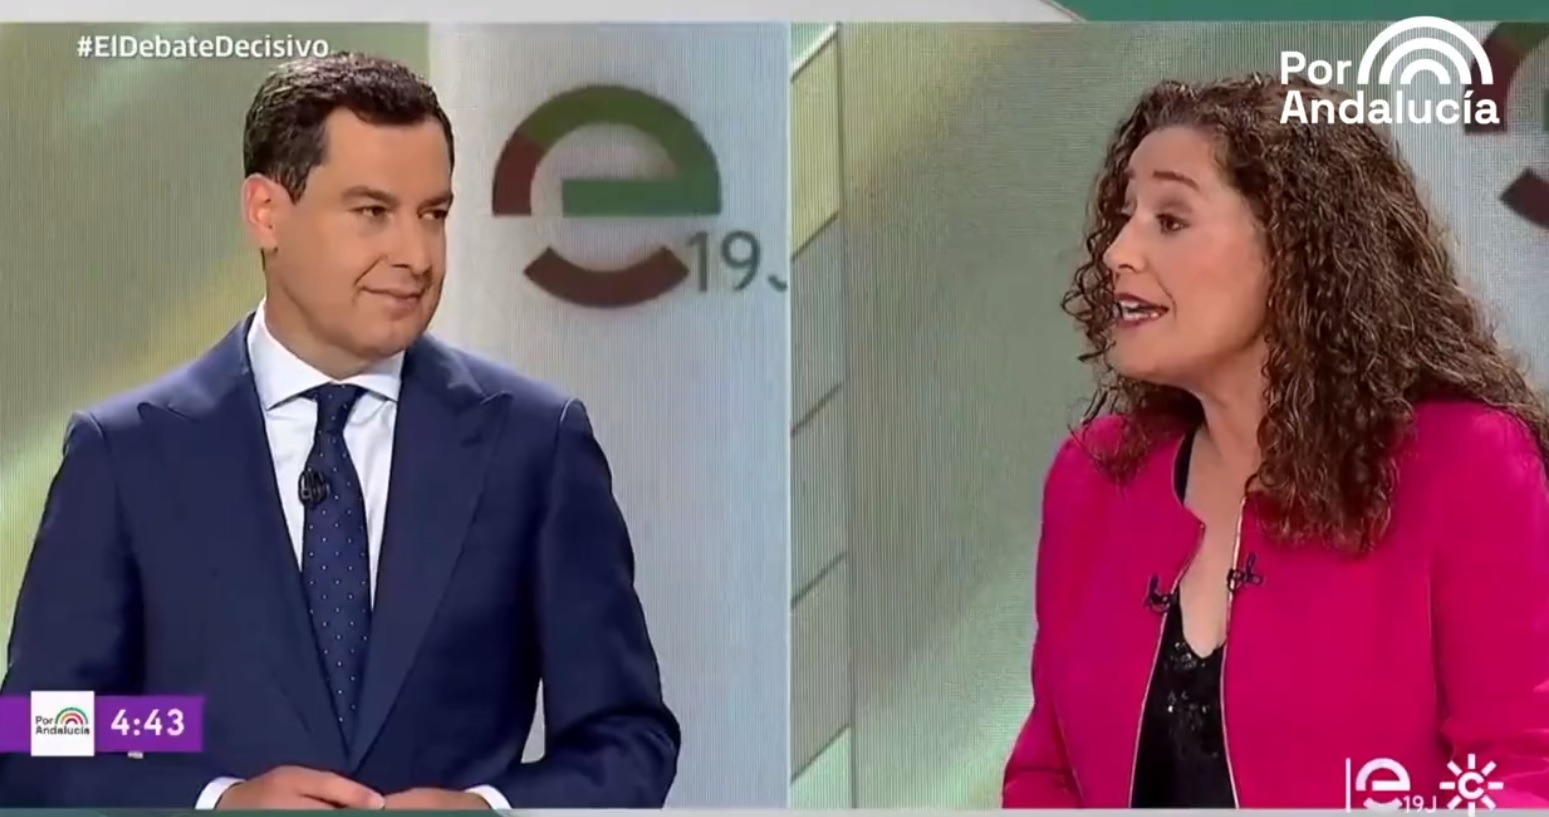 Juanma Moreno Bonilla e Inmaculada Nieto, durante el debate de este lunes en Canal Sur. Fuente: Por Andalucía.